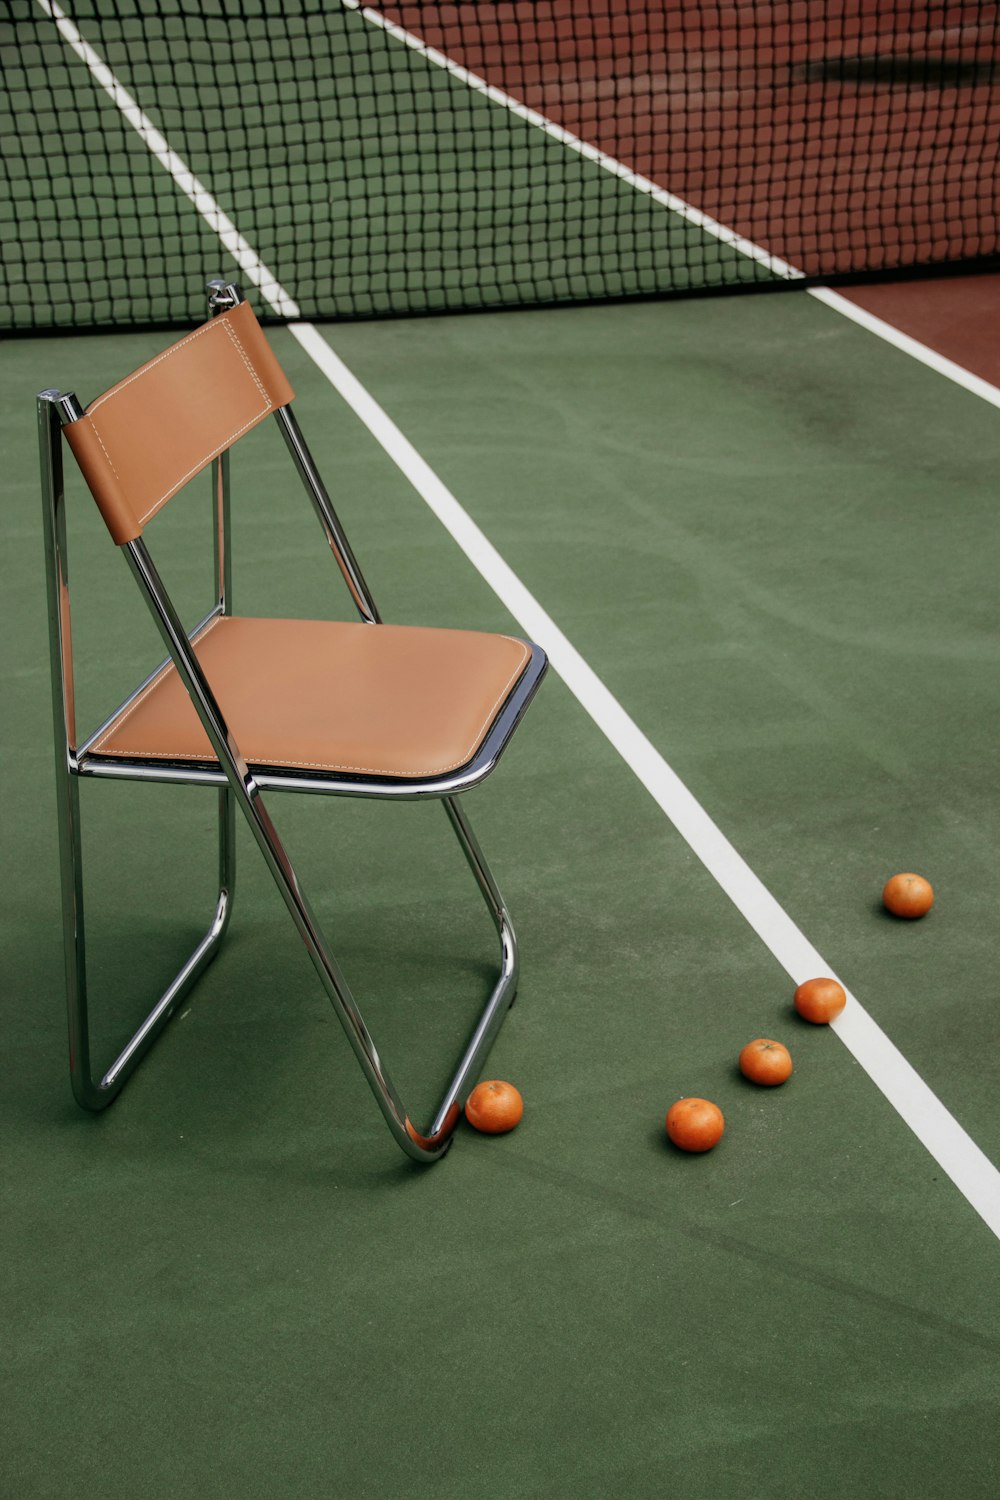 테니스 코트의 갈색 가죽 패딩 팔걸이 의자